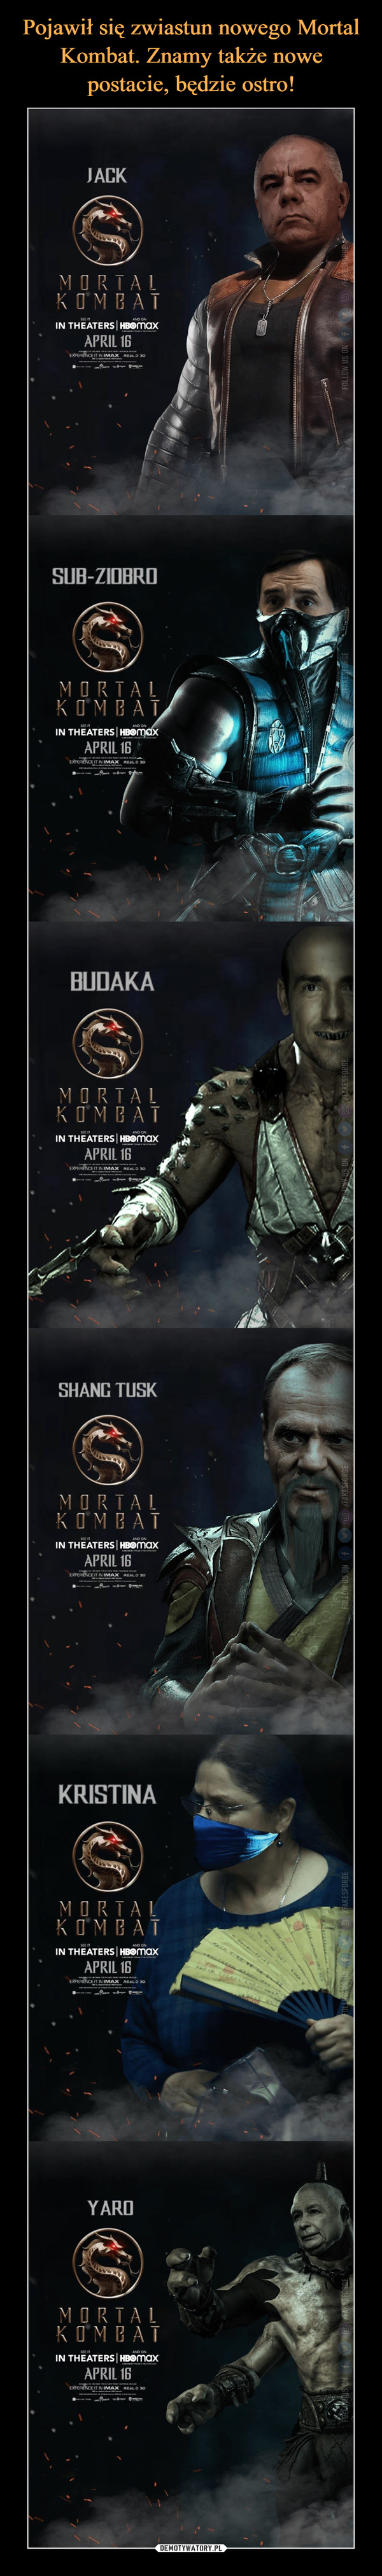 Pojawił się zwiastun nowego Mortal Kombat. Znamy także nowe postacie, będzie ostro!